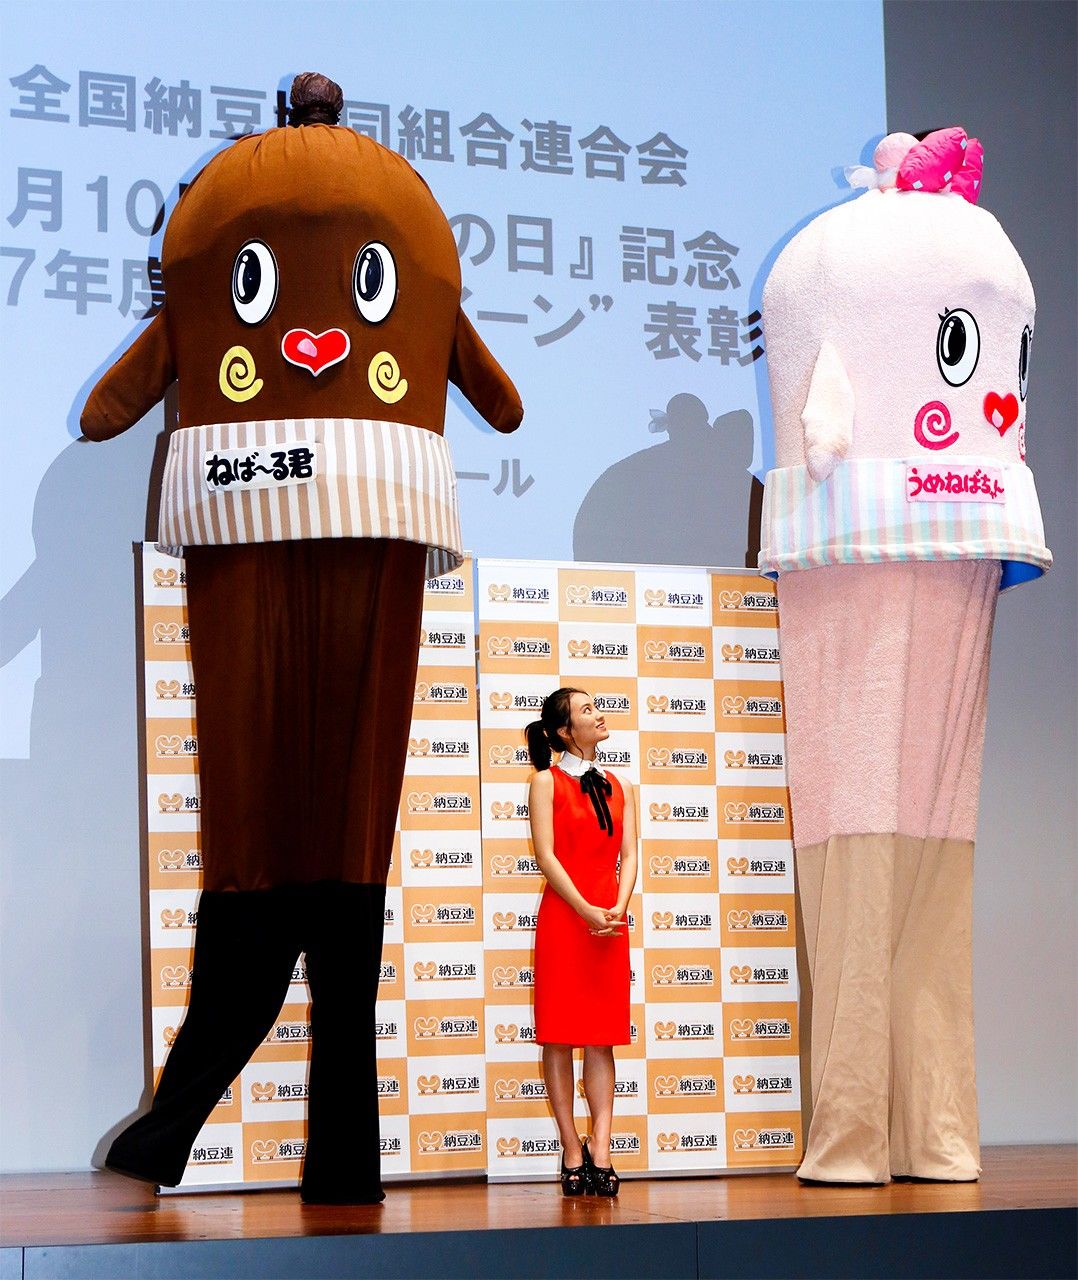 La mascotte officielle de la préfecture (gauche) a été baptisée Nebâru-kun, un nom qui rappelle le côté gluant du nattô. Il est accompagné de sa copine, Umeneba-chan, dont son appellation évoque la production de prunes (ume) à Ibaraki. (© Jiji)